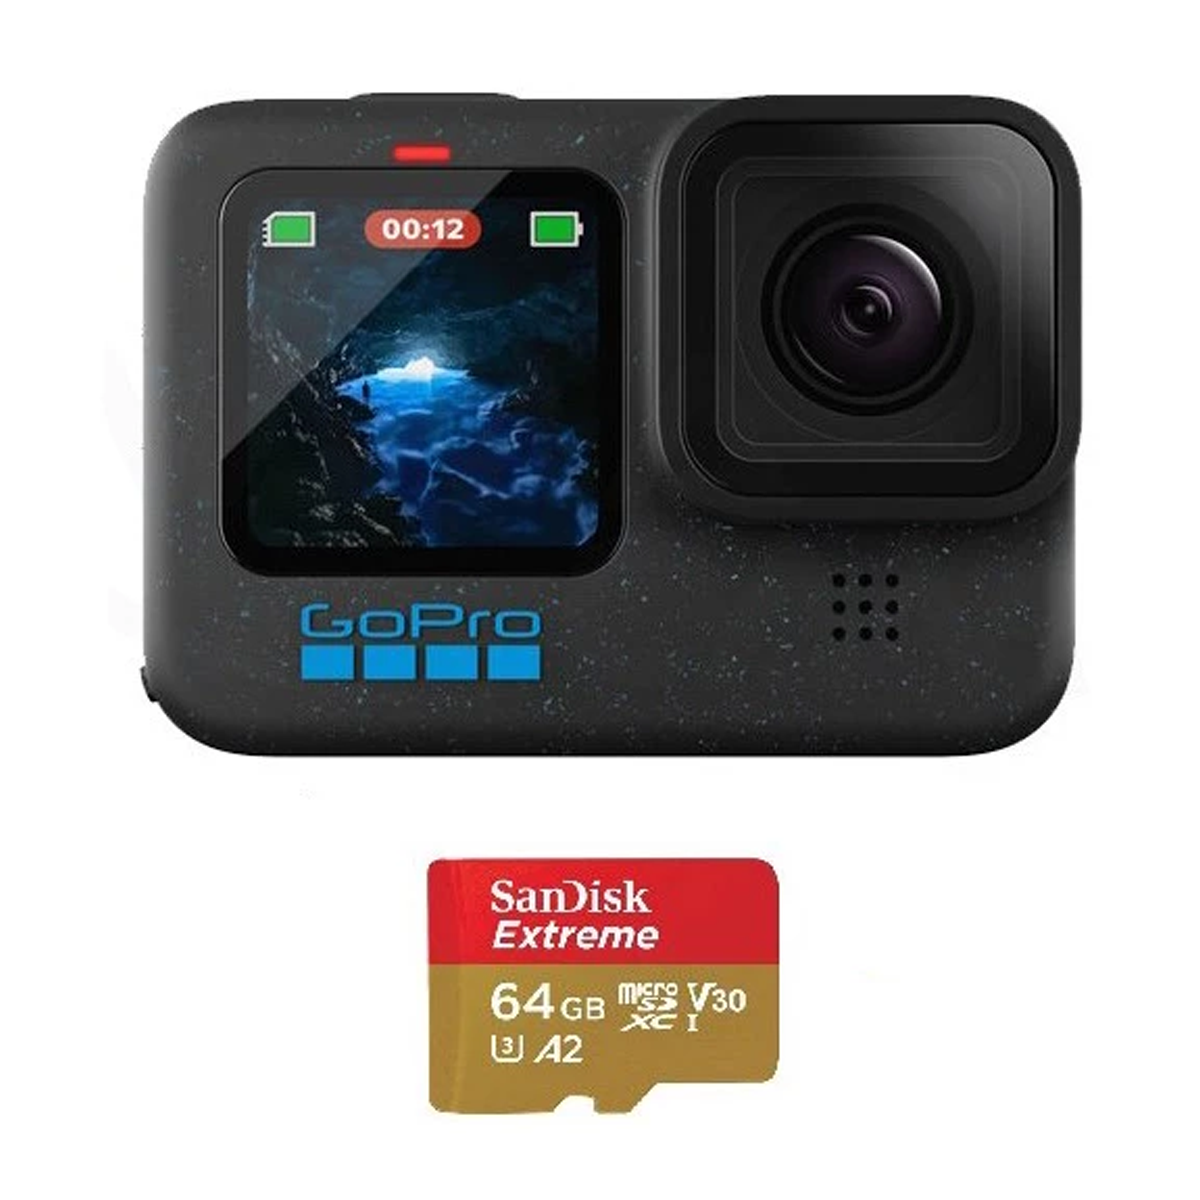 دوربین فیلم برداری گوپرو مدل Hero 12 به همراه کارت حافظه سن دیسک 64GB